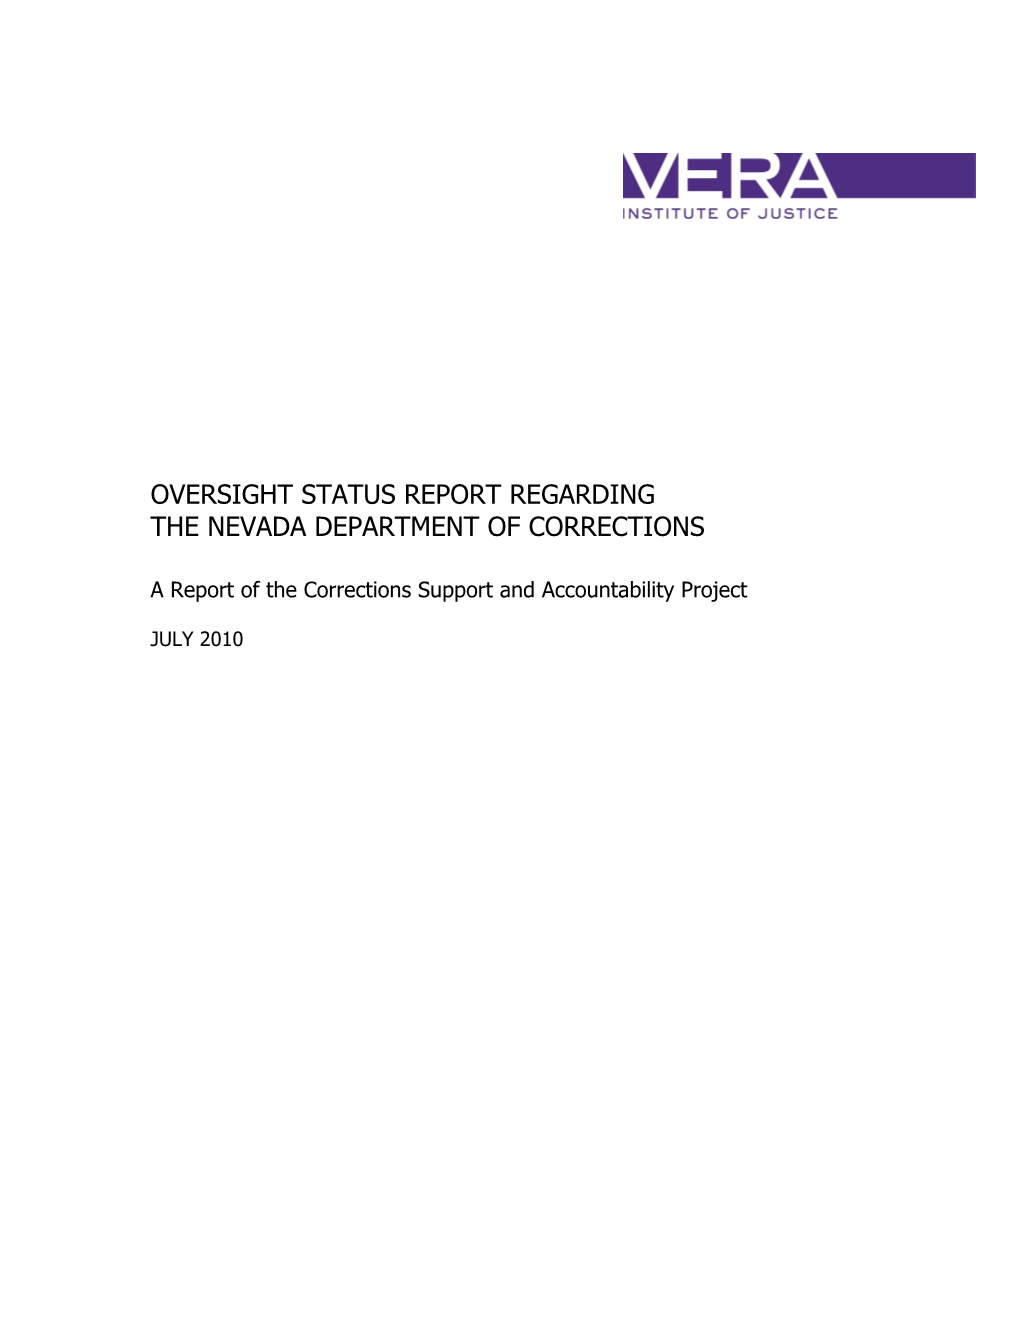 Nevada Status Report Final June 30